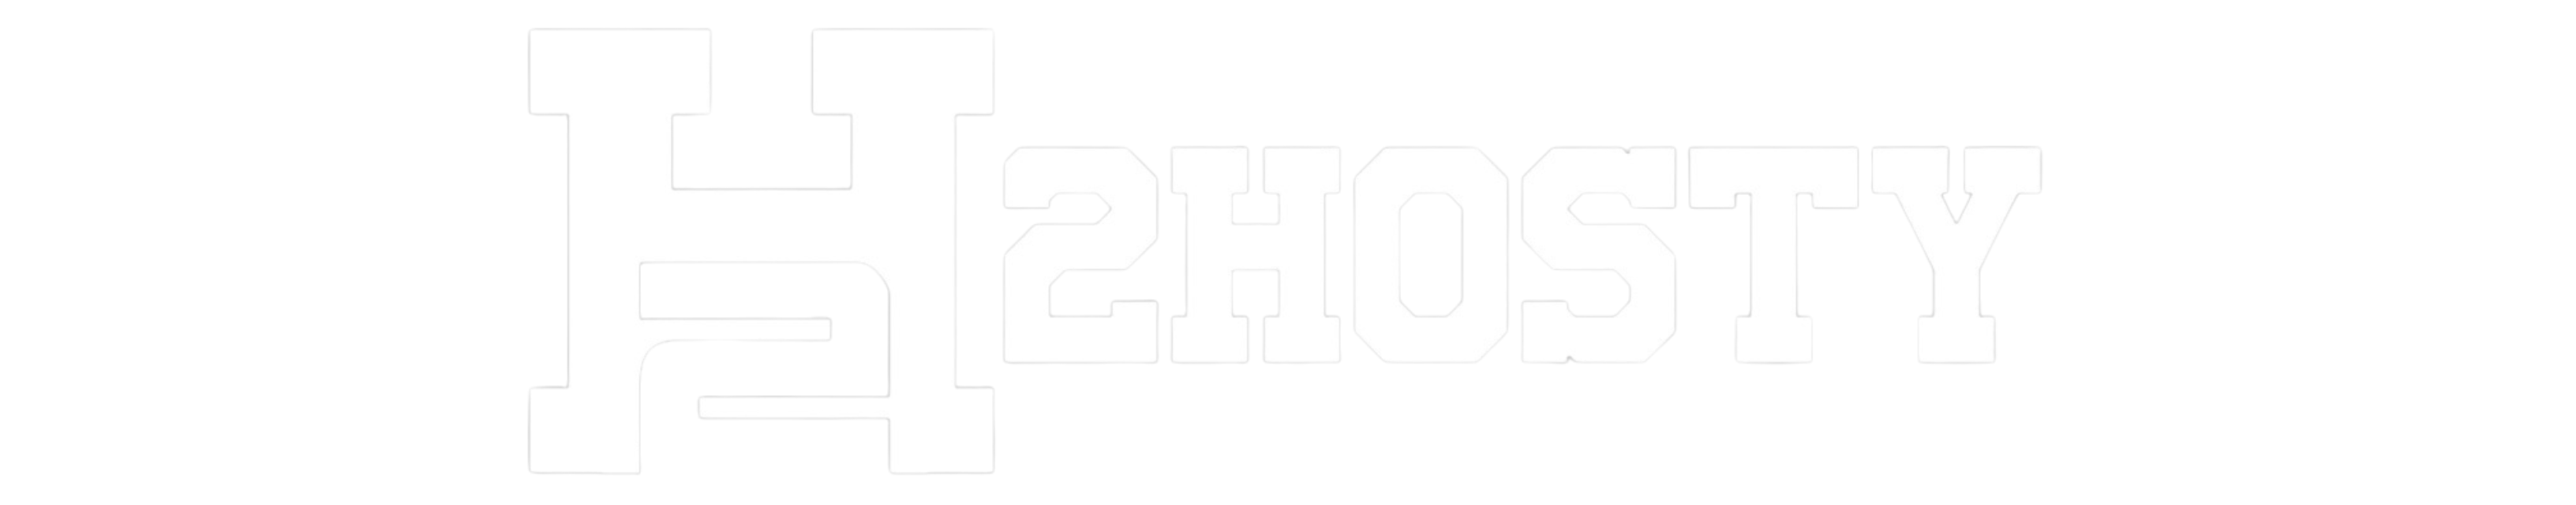 h2hosty logo white